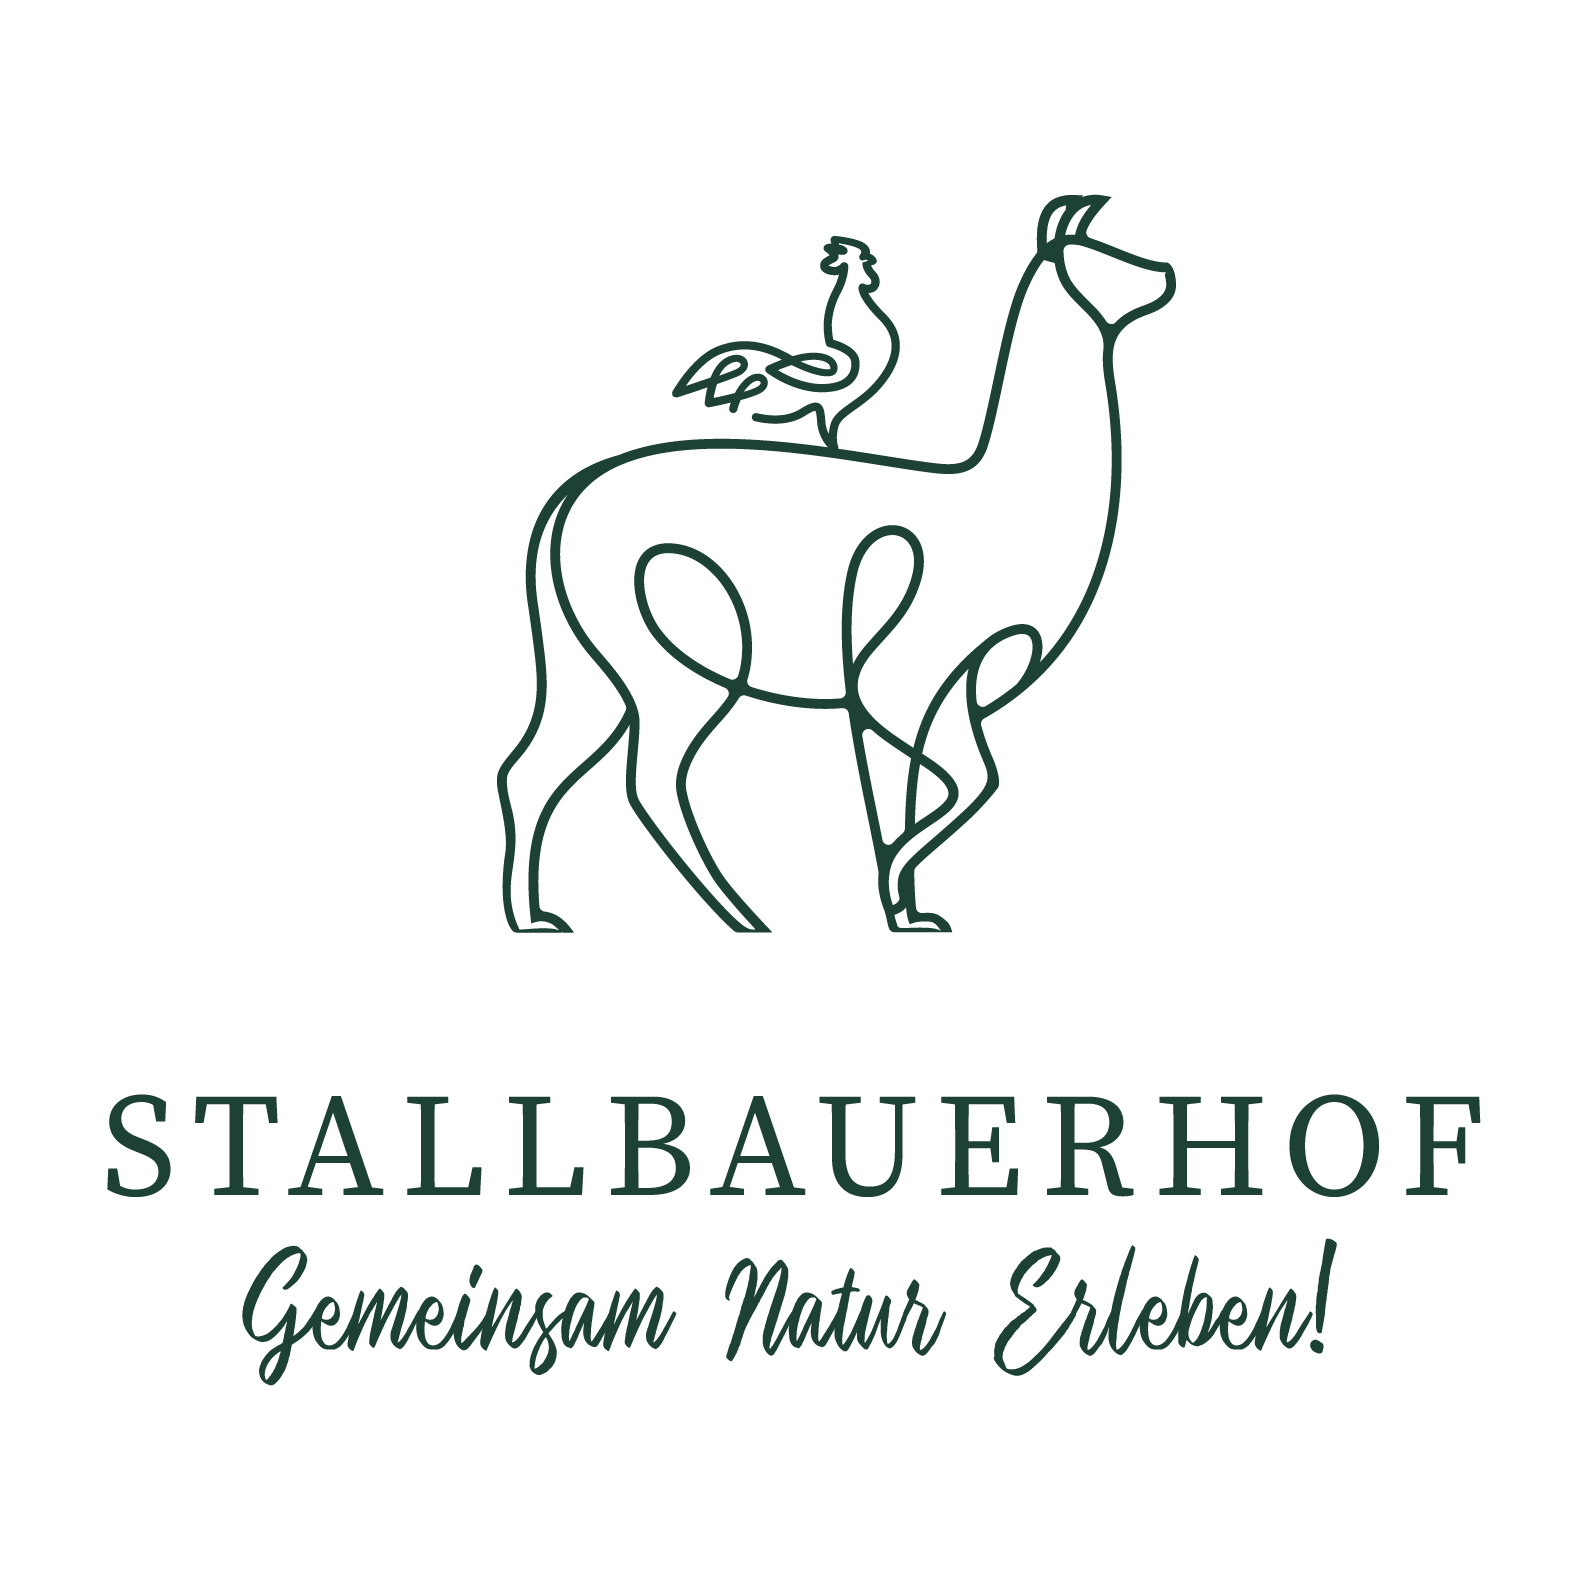 Alpaka mit Huhn auf dem Rücken darunter steht Stallbauerhof geschrieben